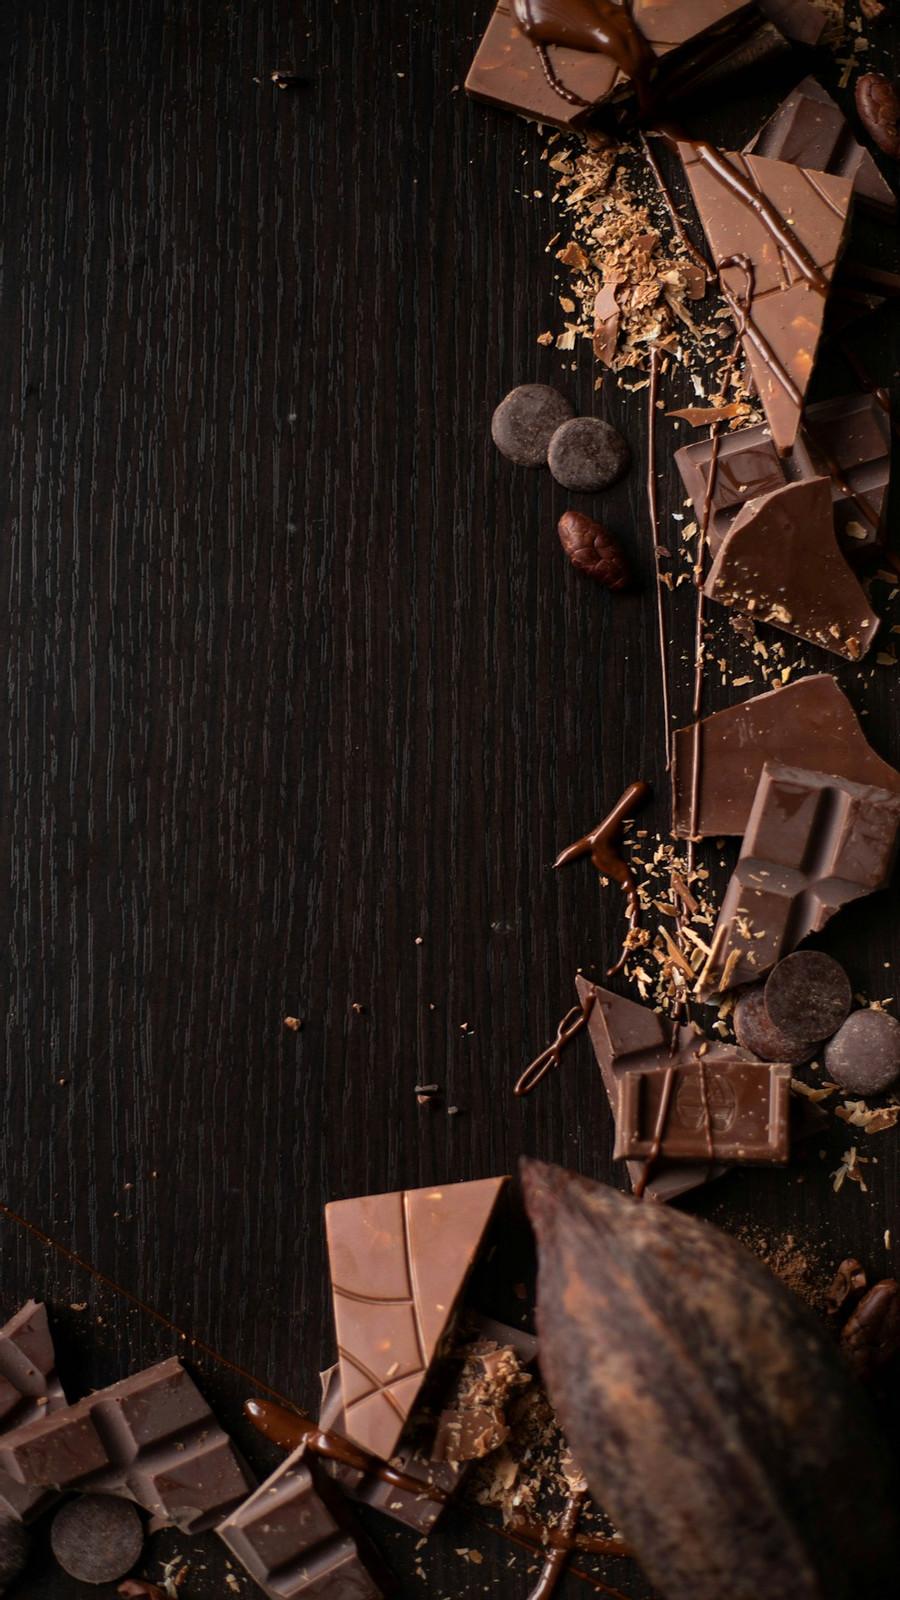 10. Dark Chocolate